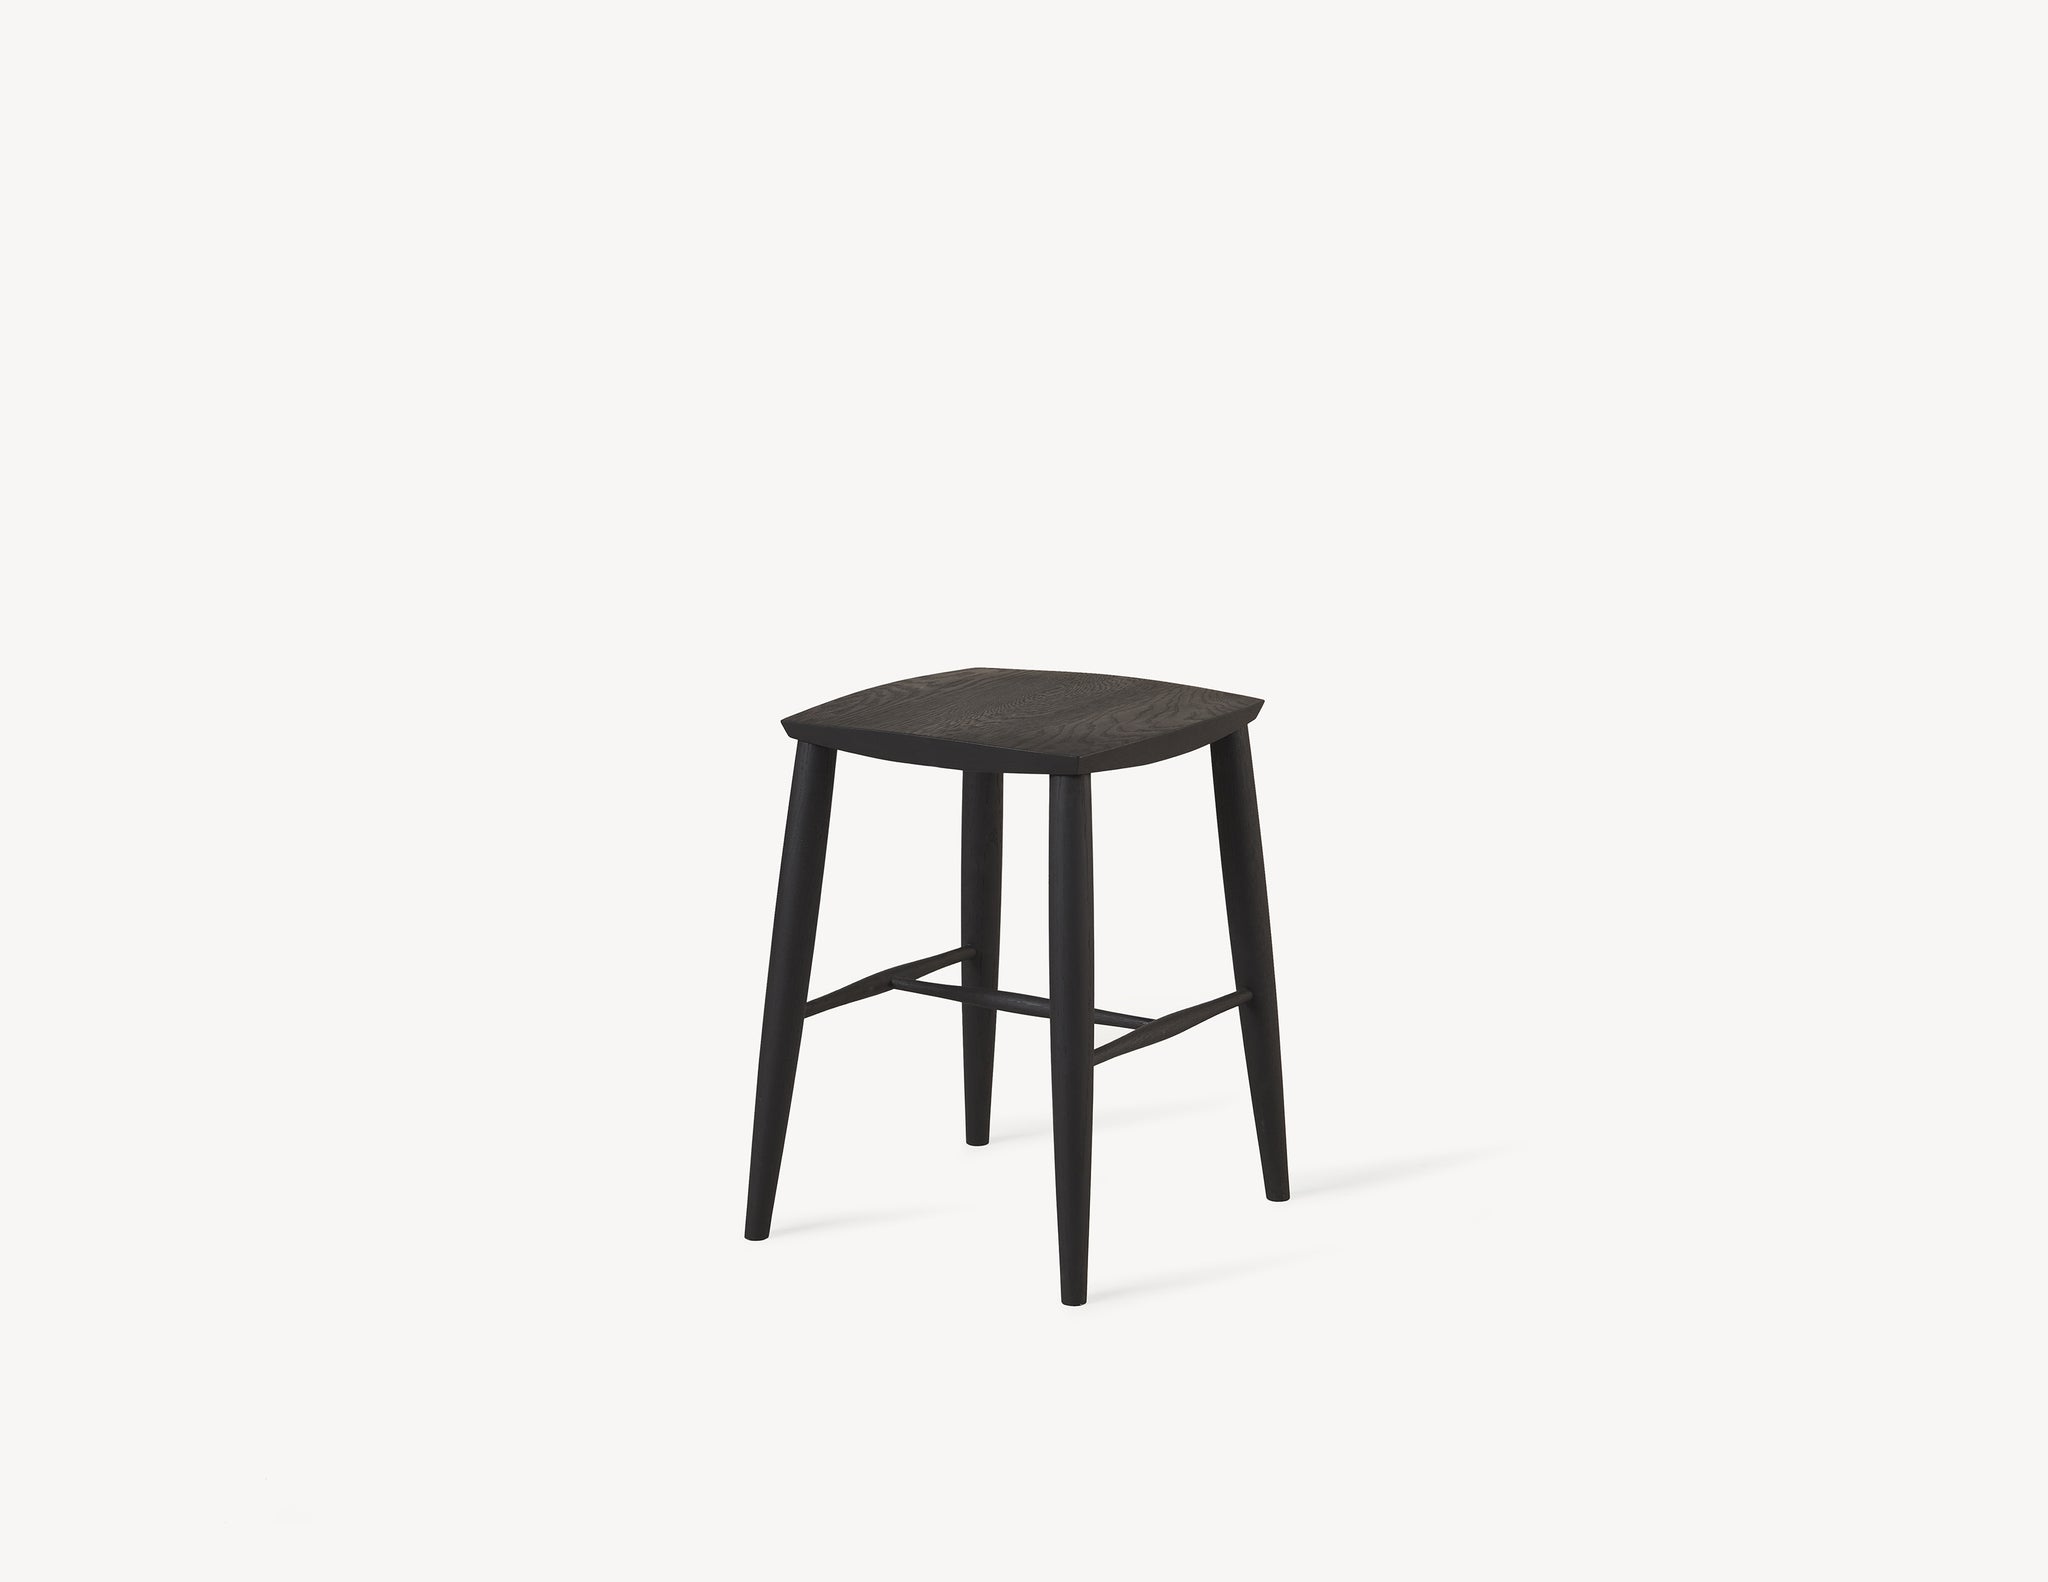 short minimal wooden stool in black oak wood.